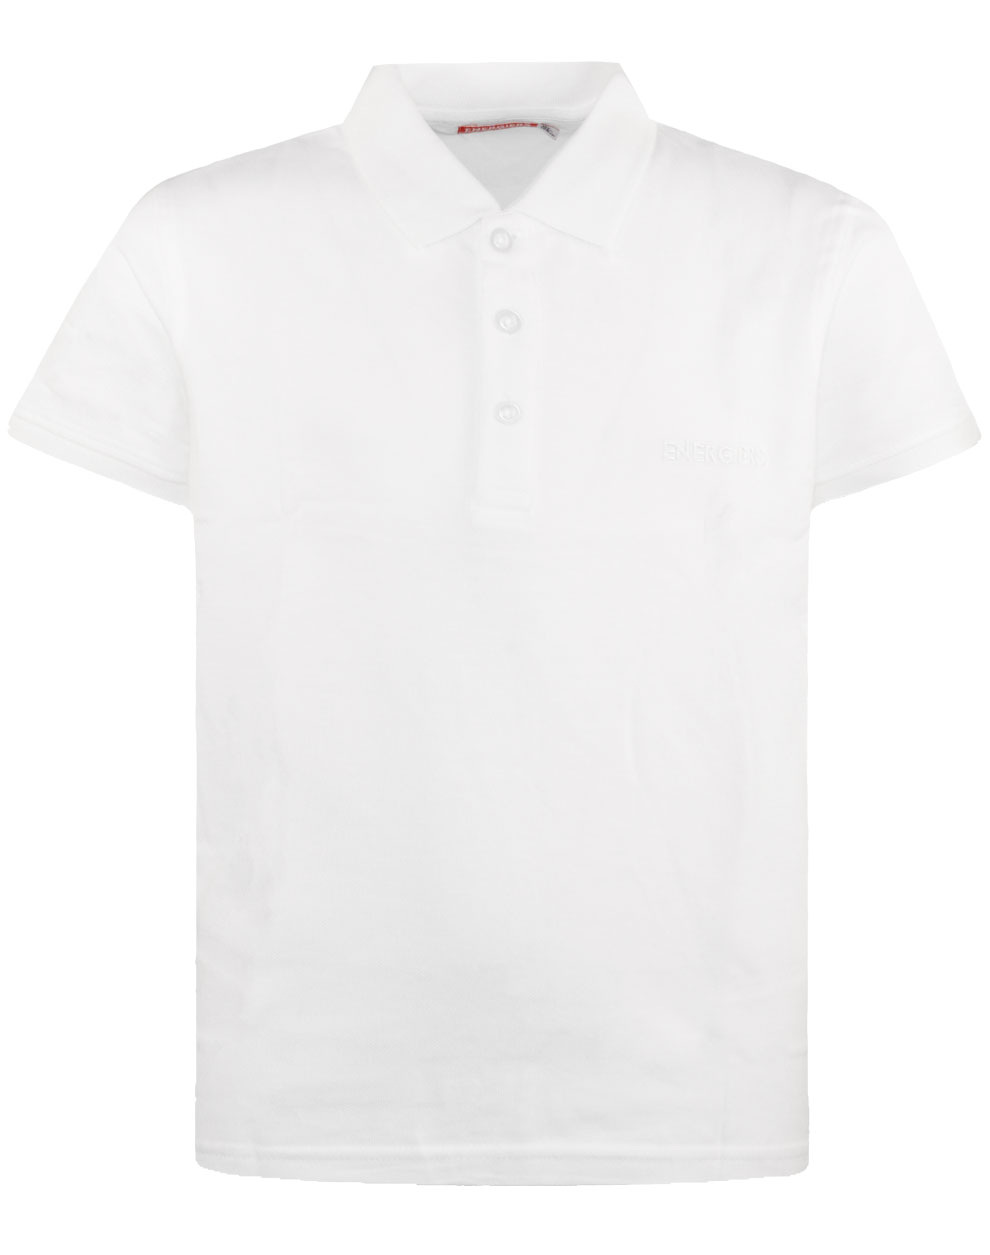 Μπλούζα πόλο κοντό μανίκι basic line | ΛΕΥΚΟ ΑΓΟΡΙ 1-6>Μπλούζα